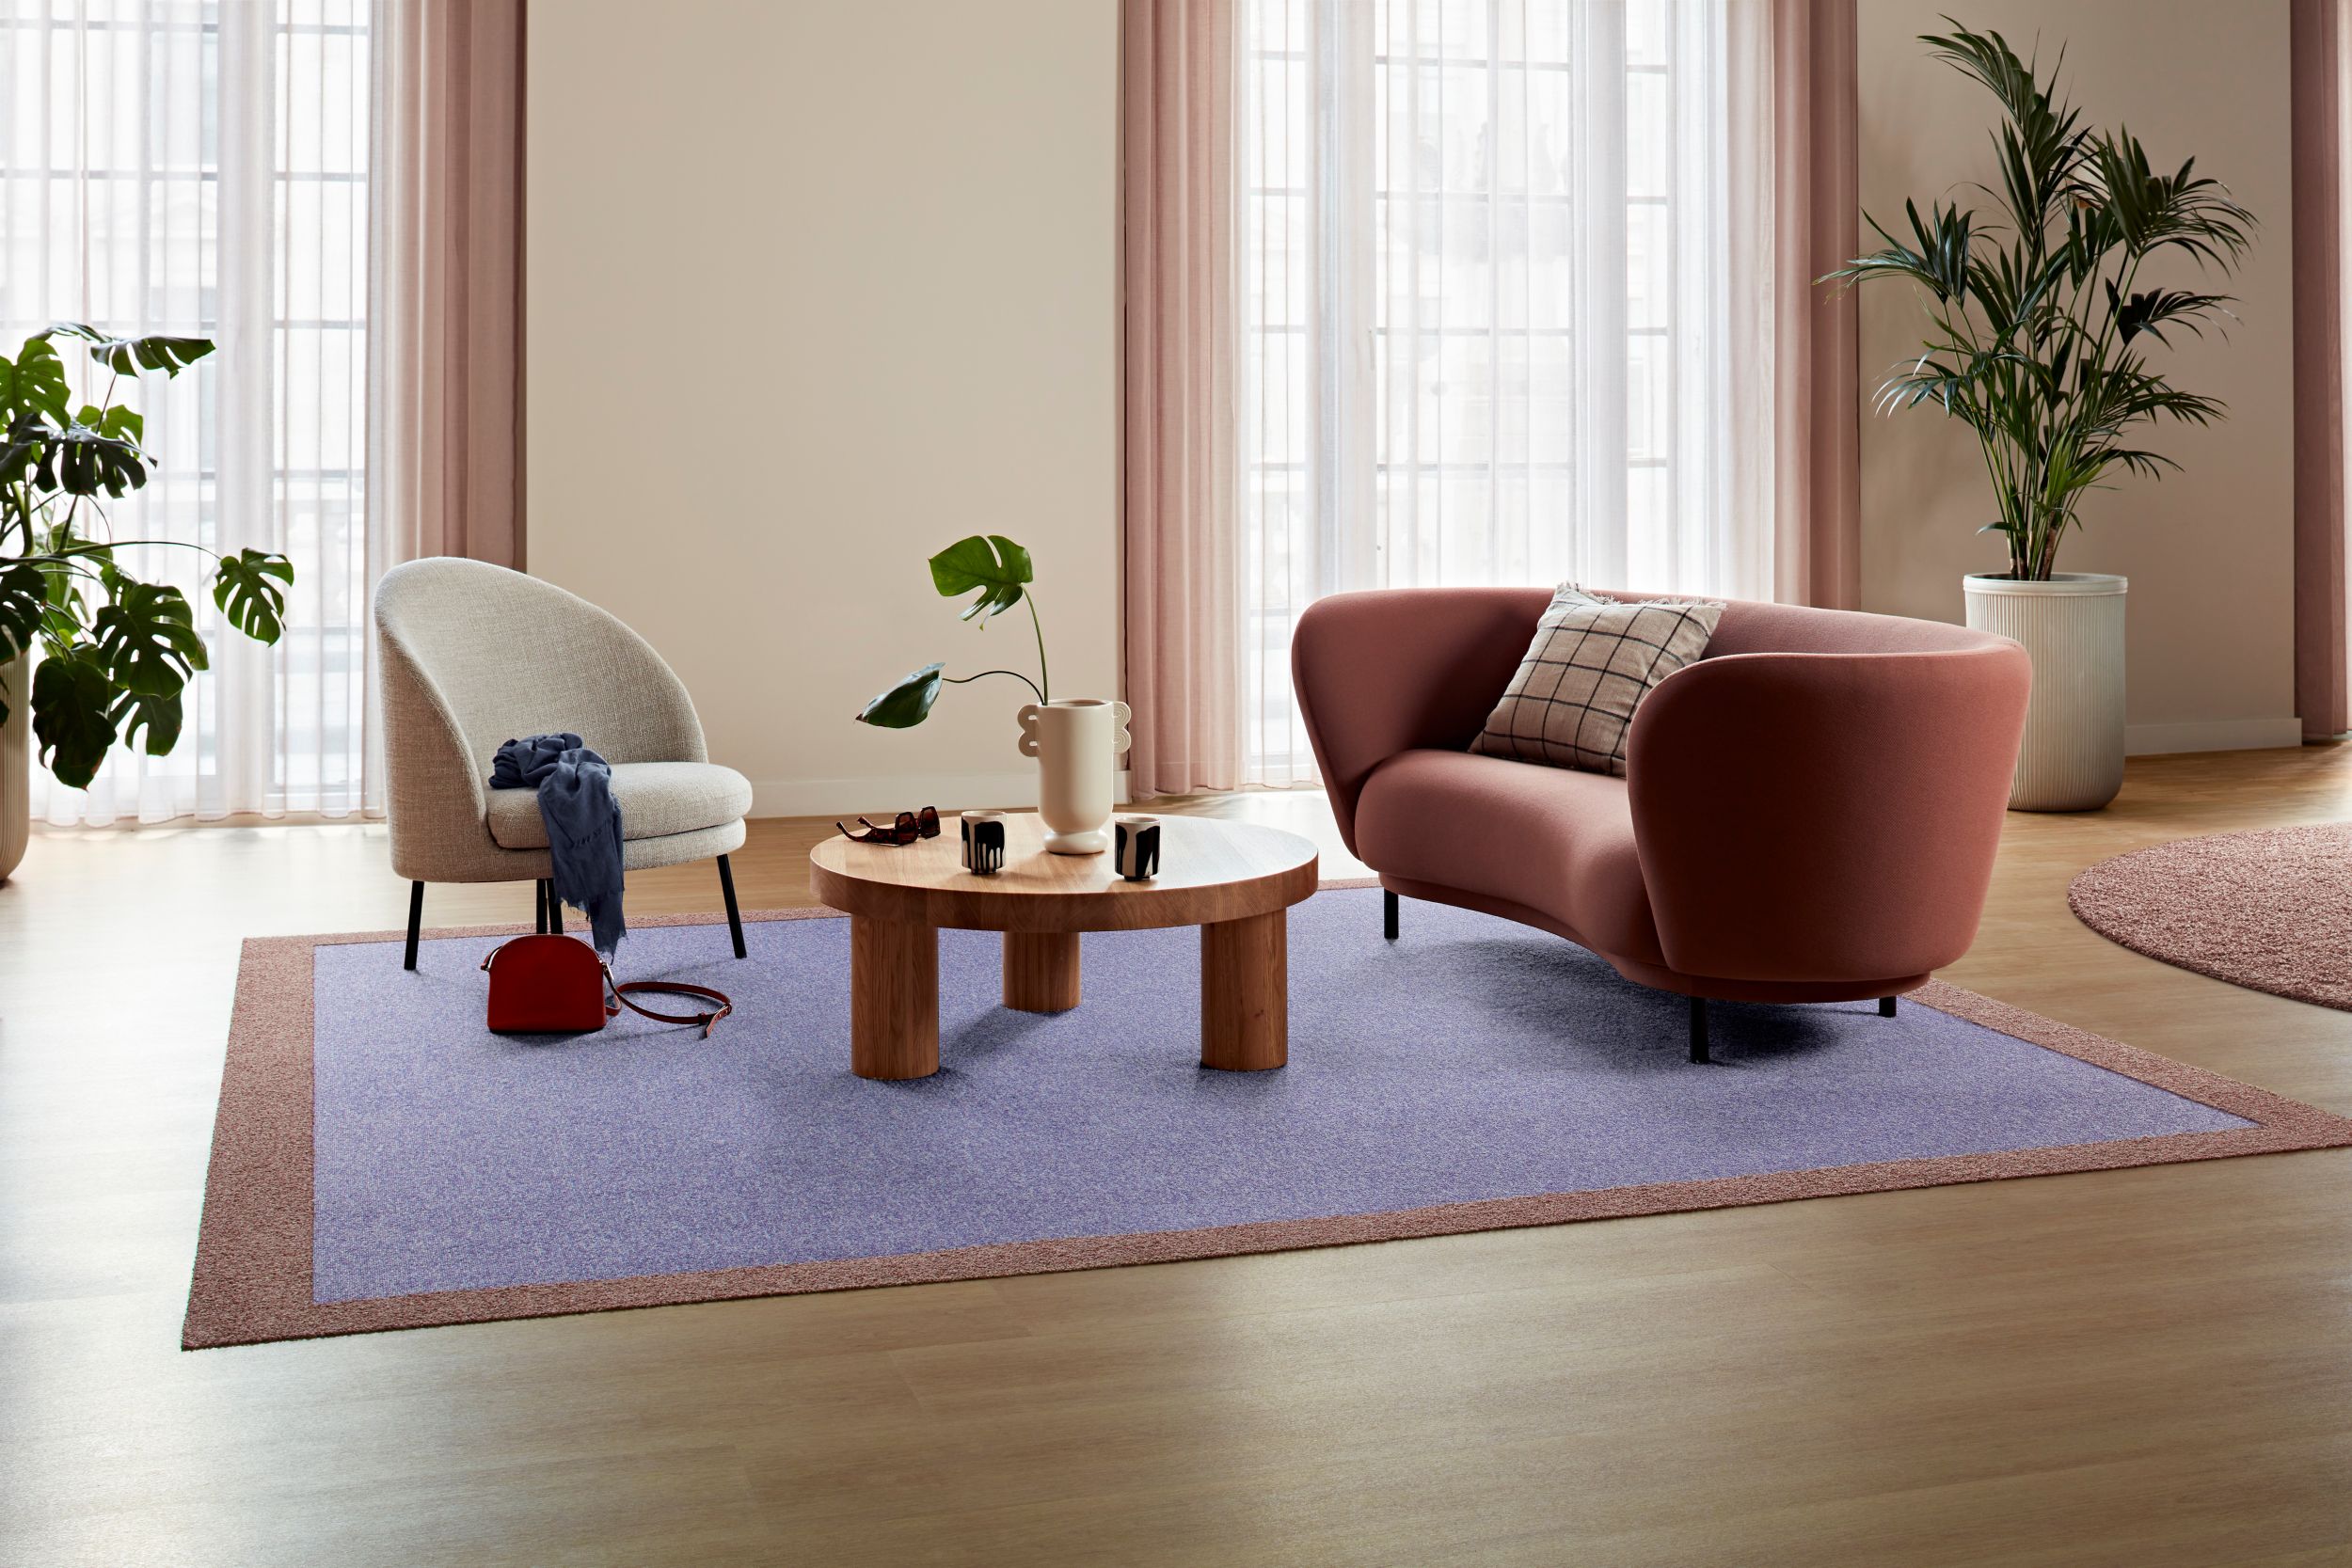 Carpet: Heuga 580 II, Lavender, Monolithic,  Touch & Tones 102, 103, Blush, Monolithic, LVT: Level Set Woodgrains, Cedar, Ashlar número de imagen 9